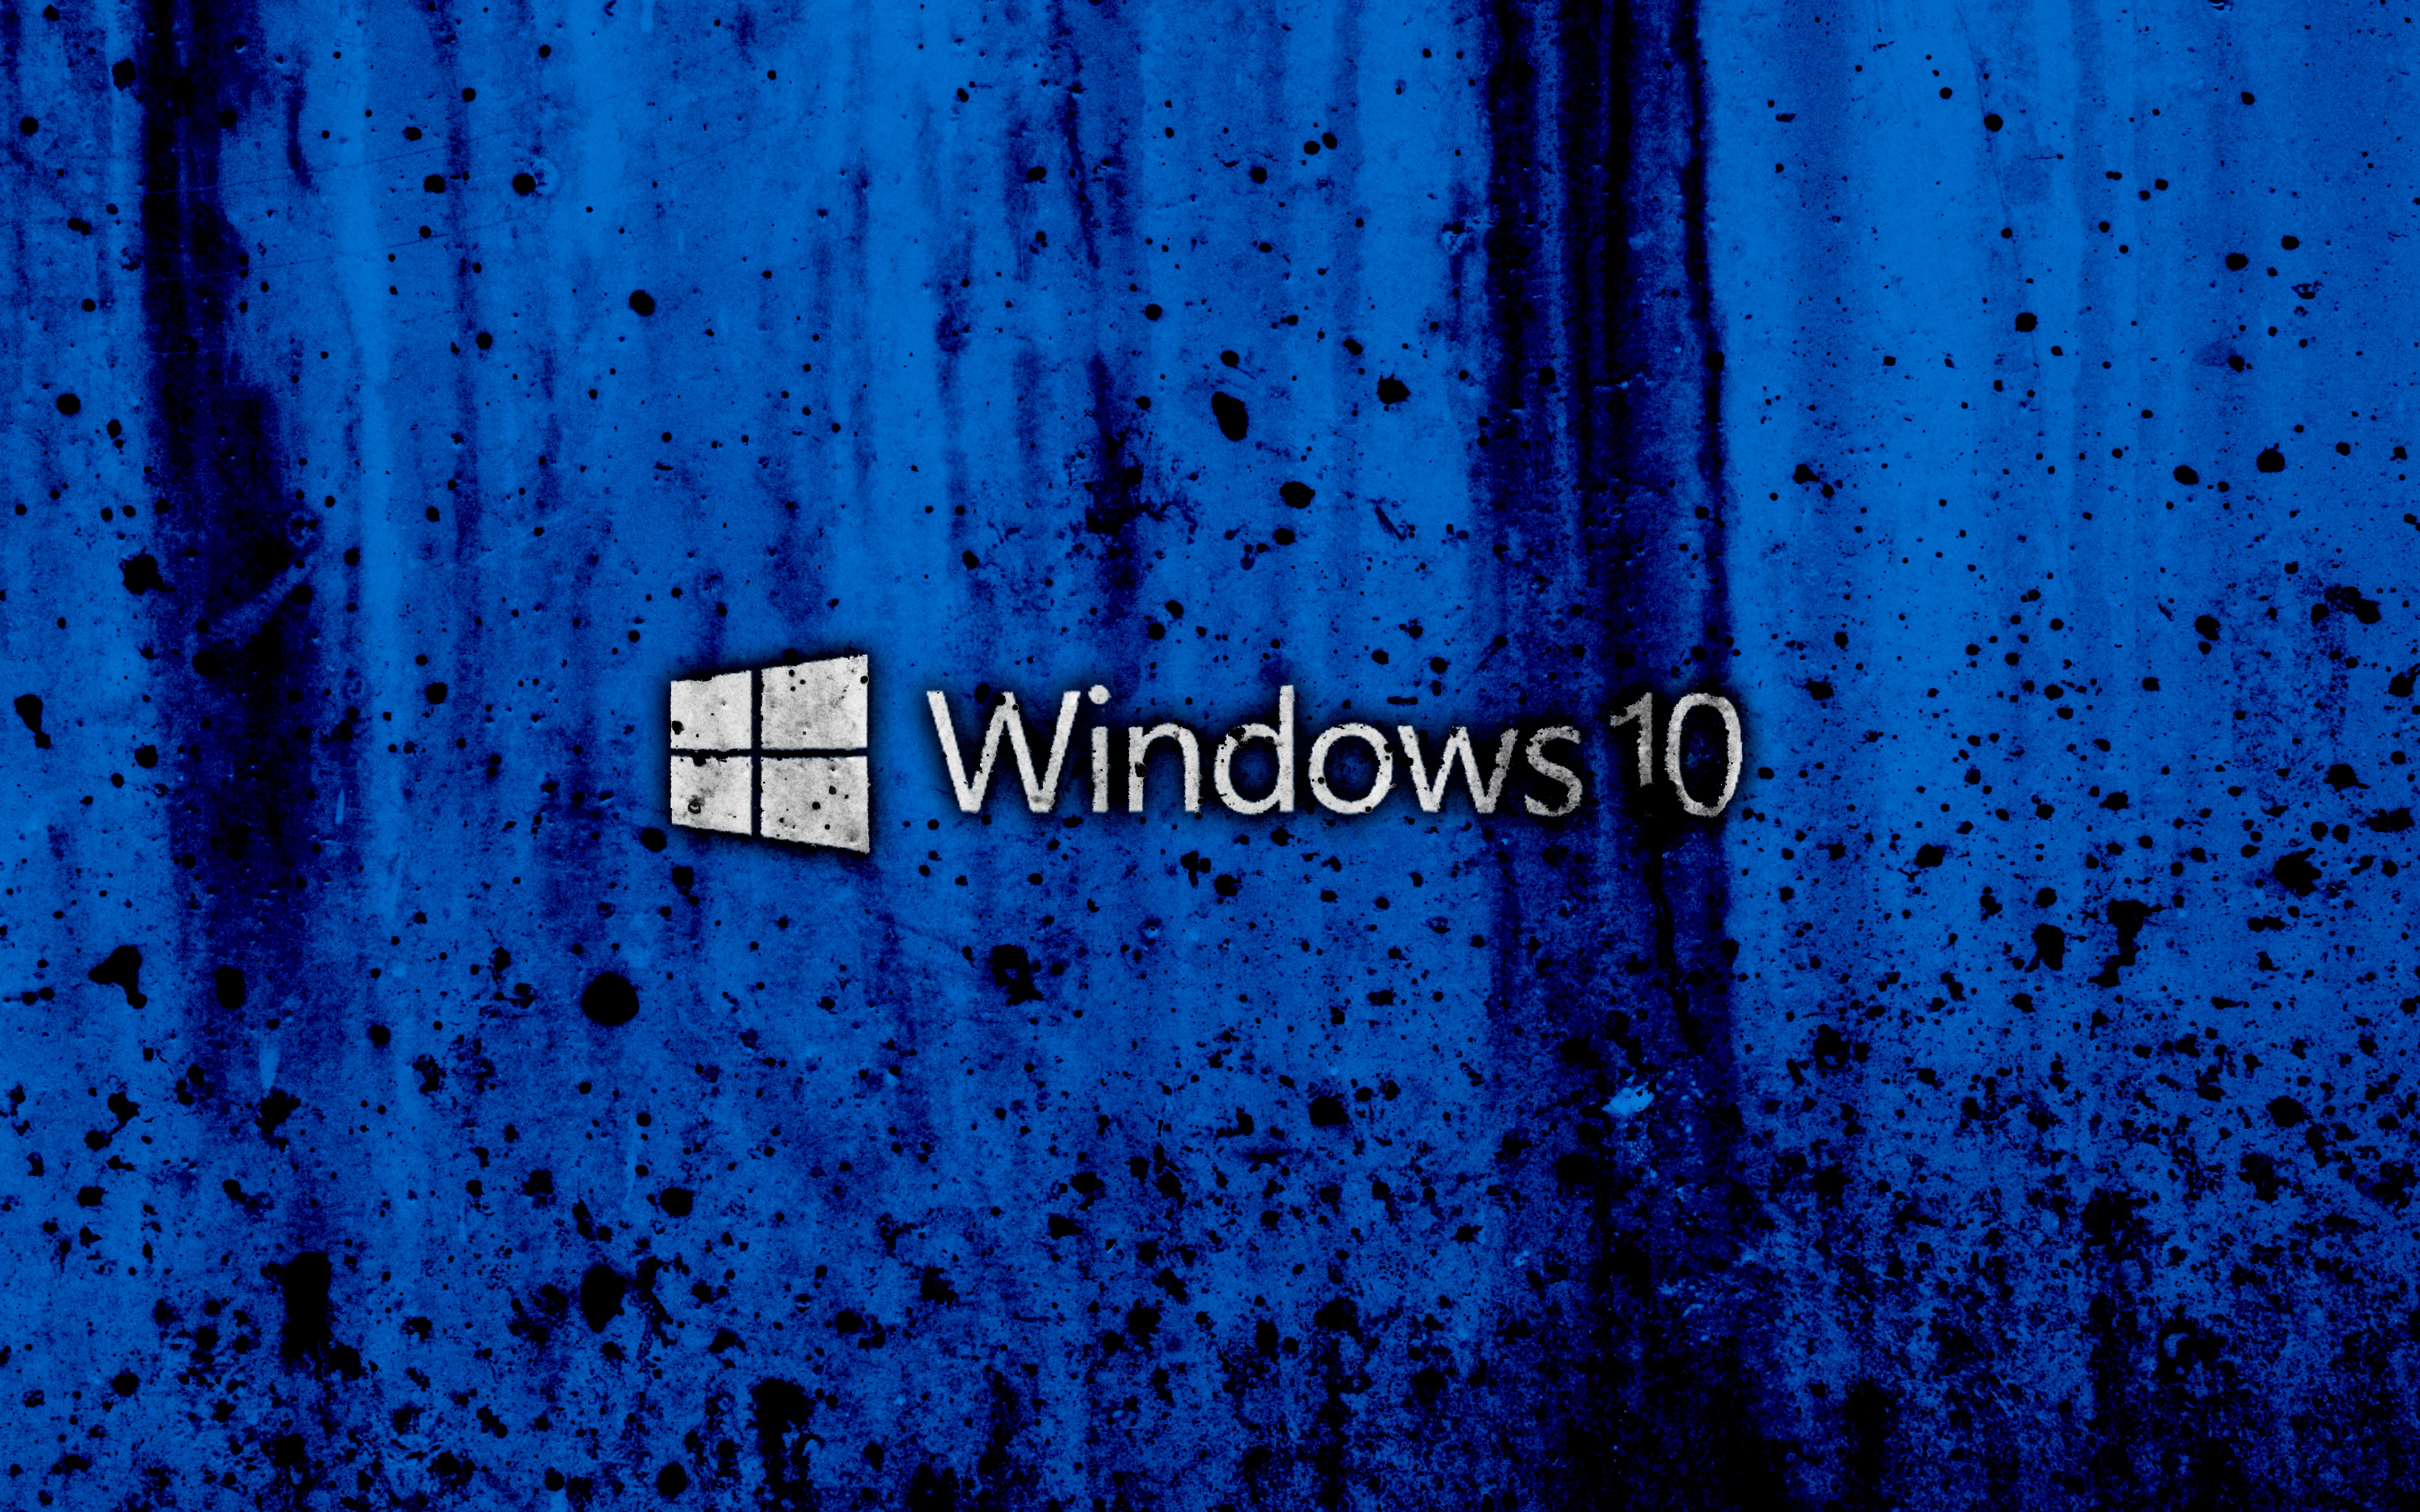 grunge-blue-background-logo-creative-windows 10-3840x2400.jpg